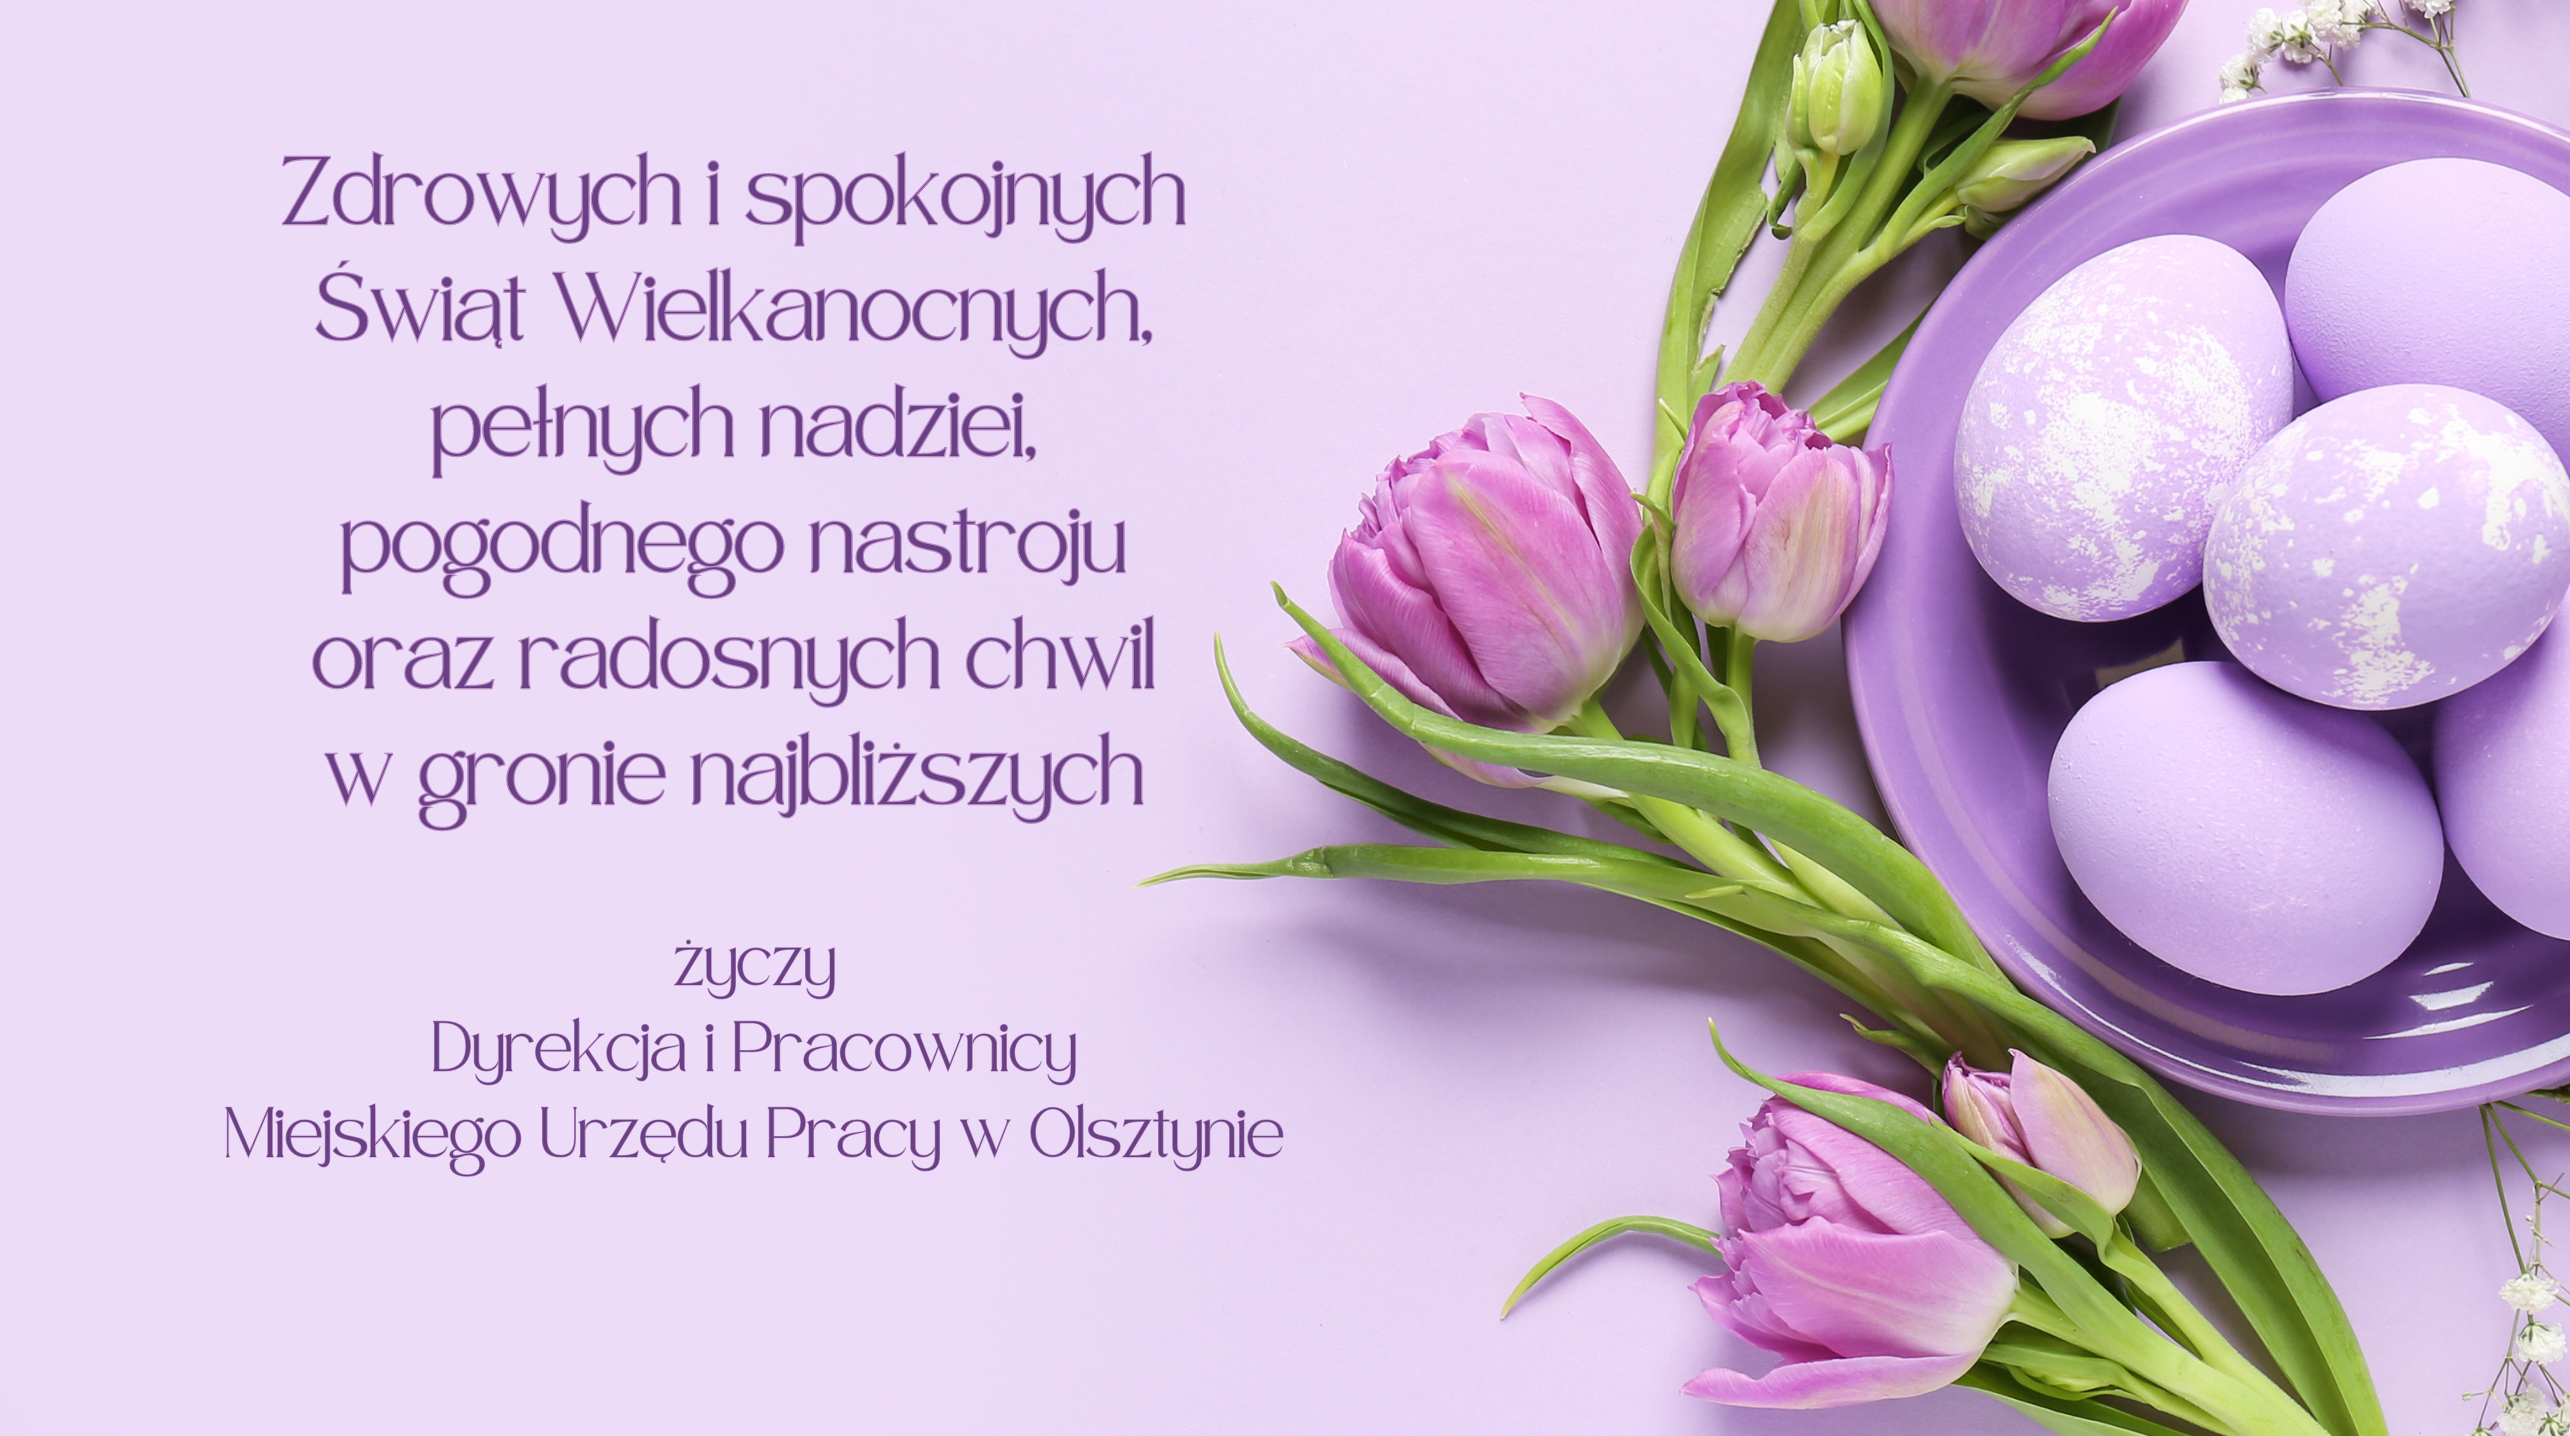 Kartka w odcieniach fioletu, obok życzeń są tulipany i jajka na talerzyku. Zdrowych i spokojnych Świąt Wielkanocnych, pełnych nadziei, pogodnego nastroju oraz radosnych chwil w gronie najbliższych życzy Dyrekcja i Pracownicy Miejskiego Urzędu Pracy w Olsztynie